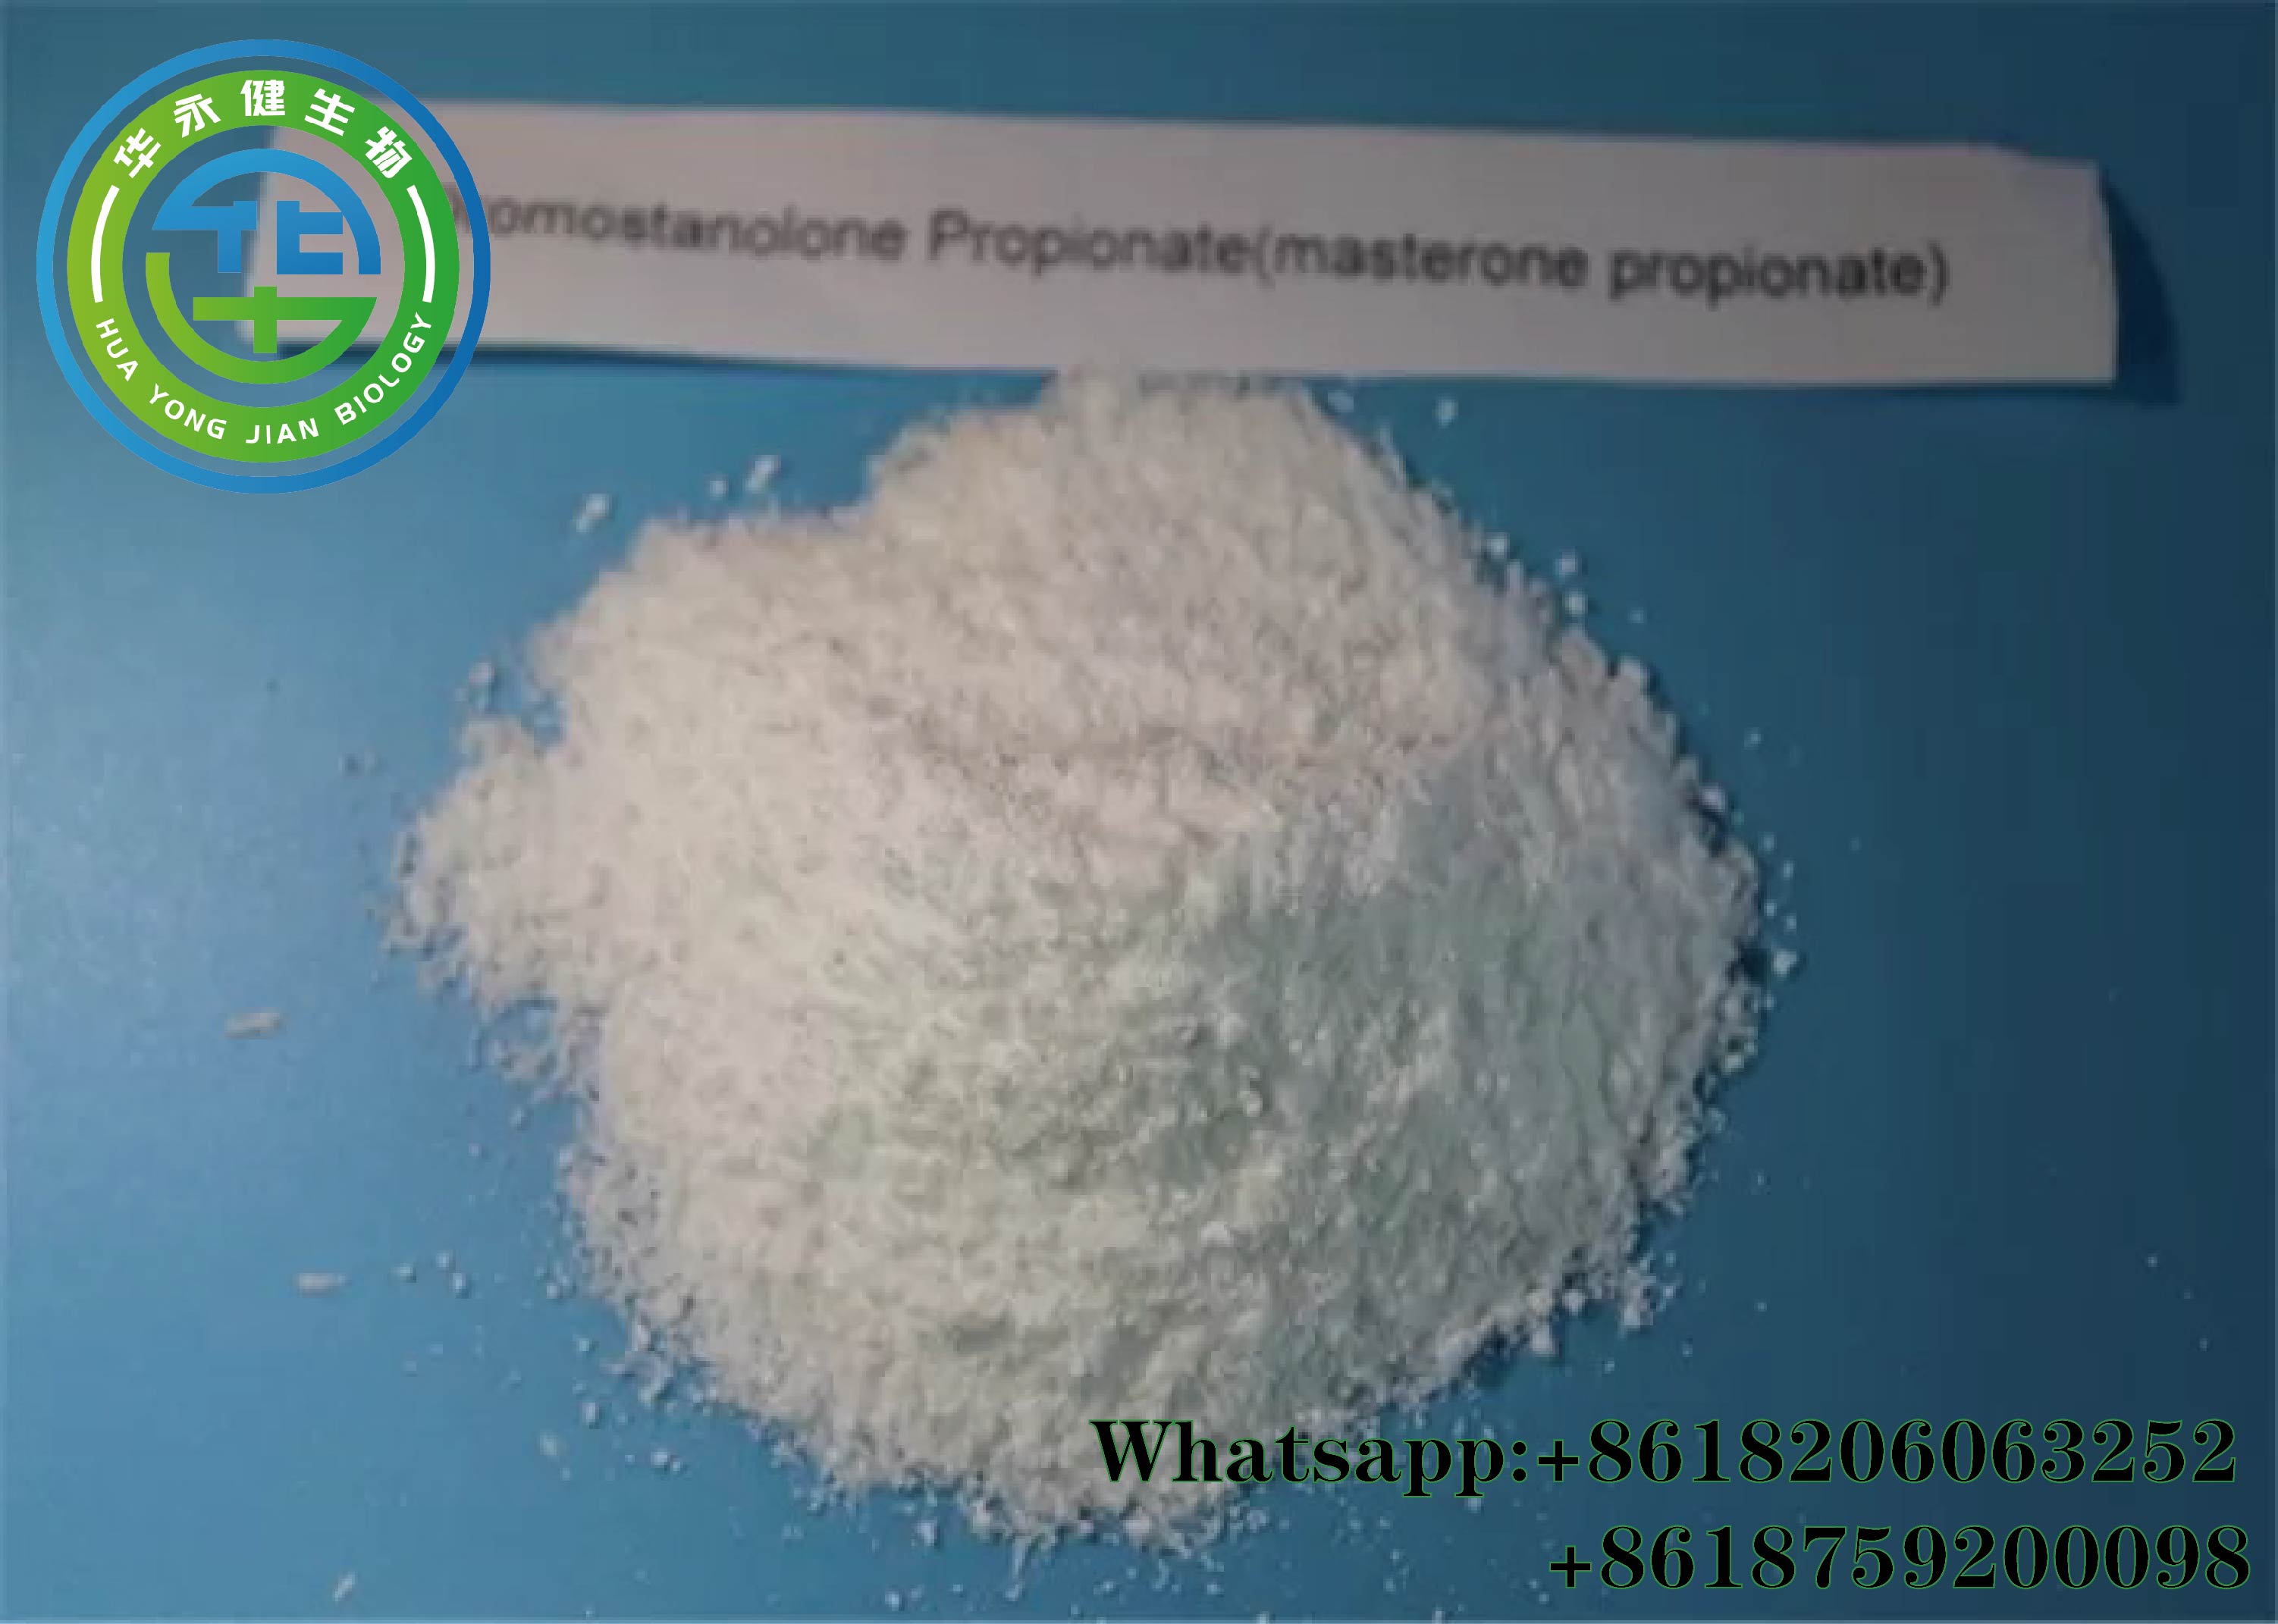 Drostanolone Propionate(Masteron p)24